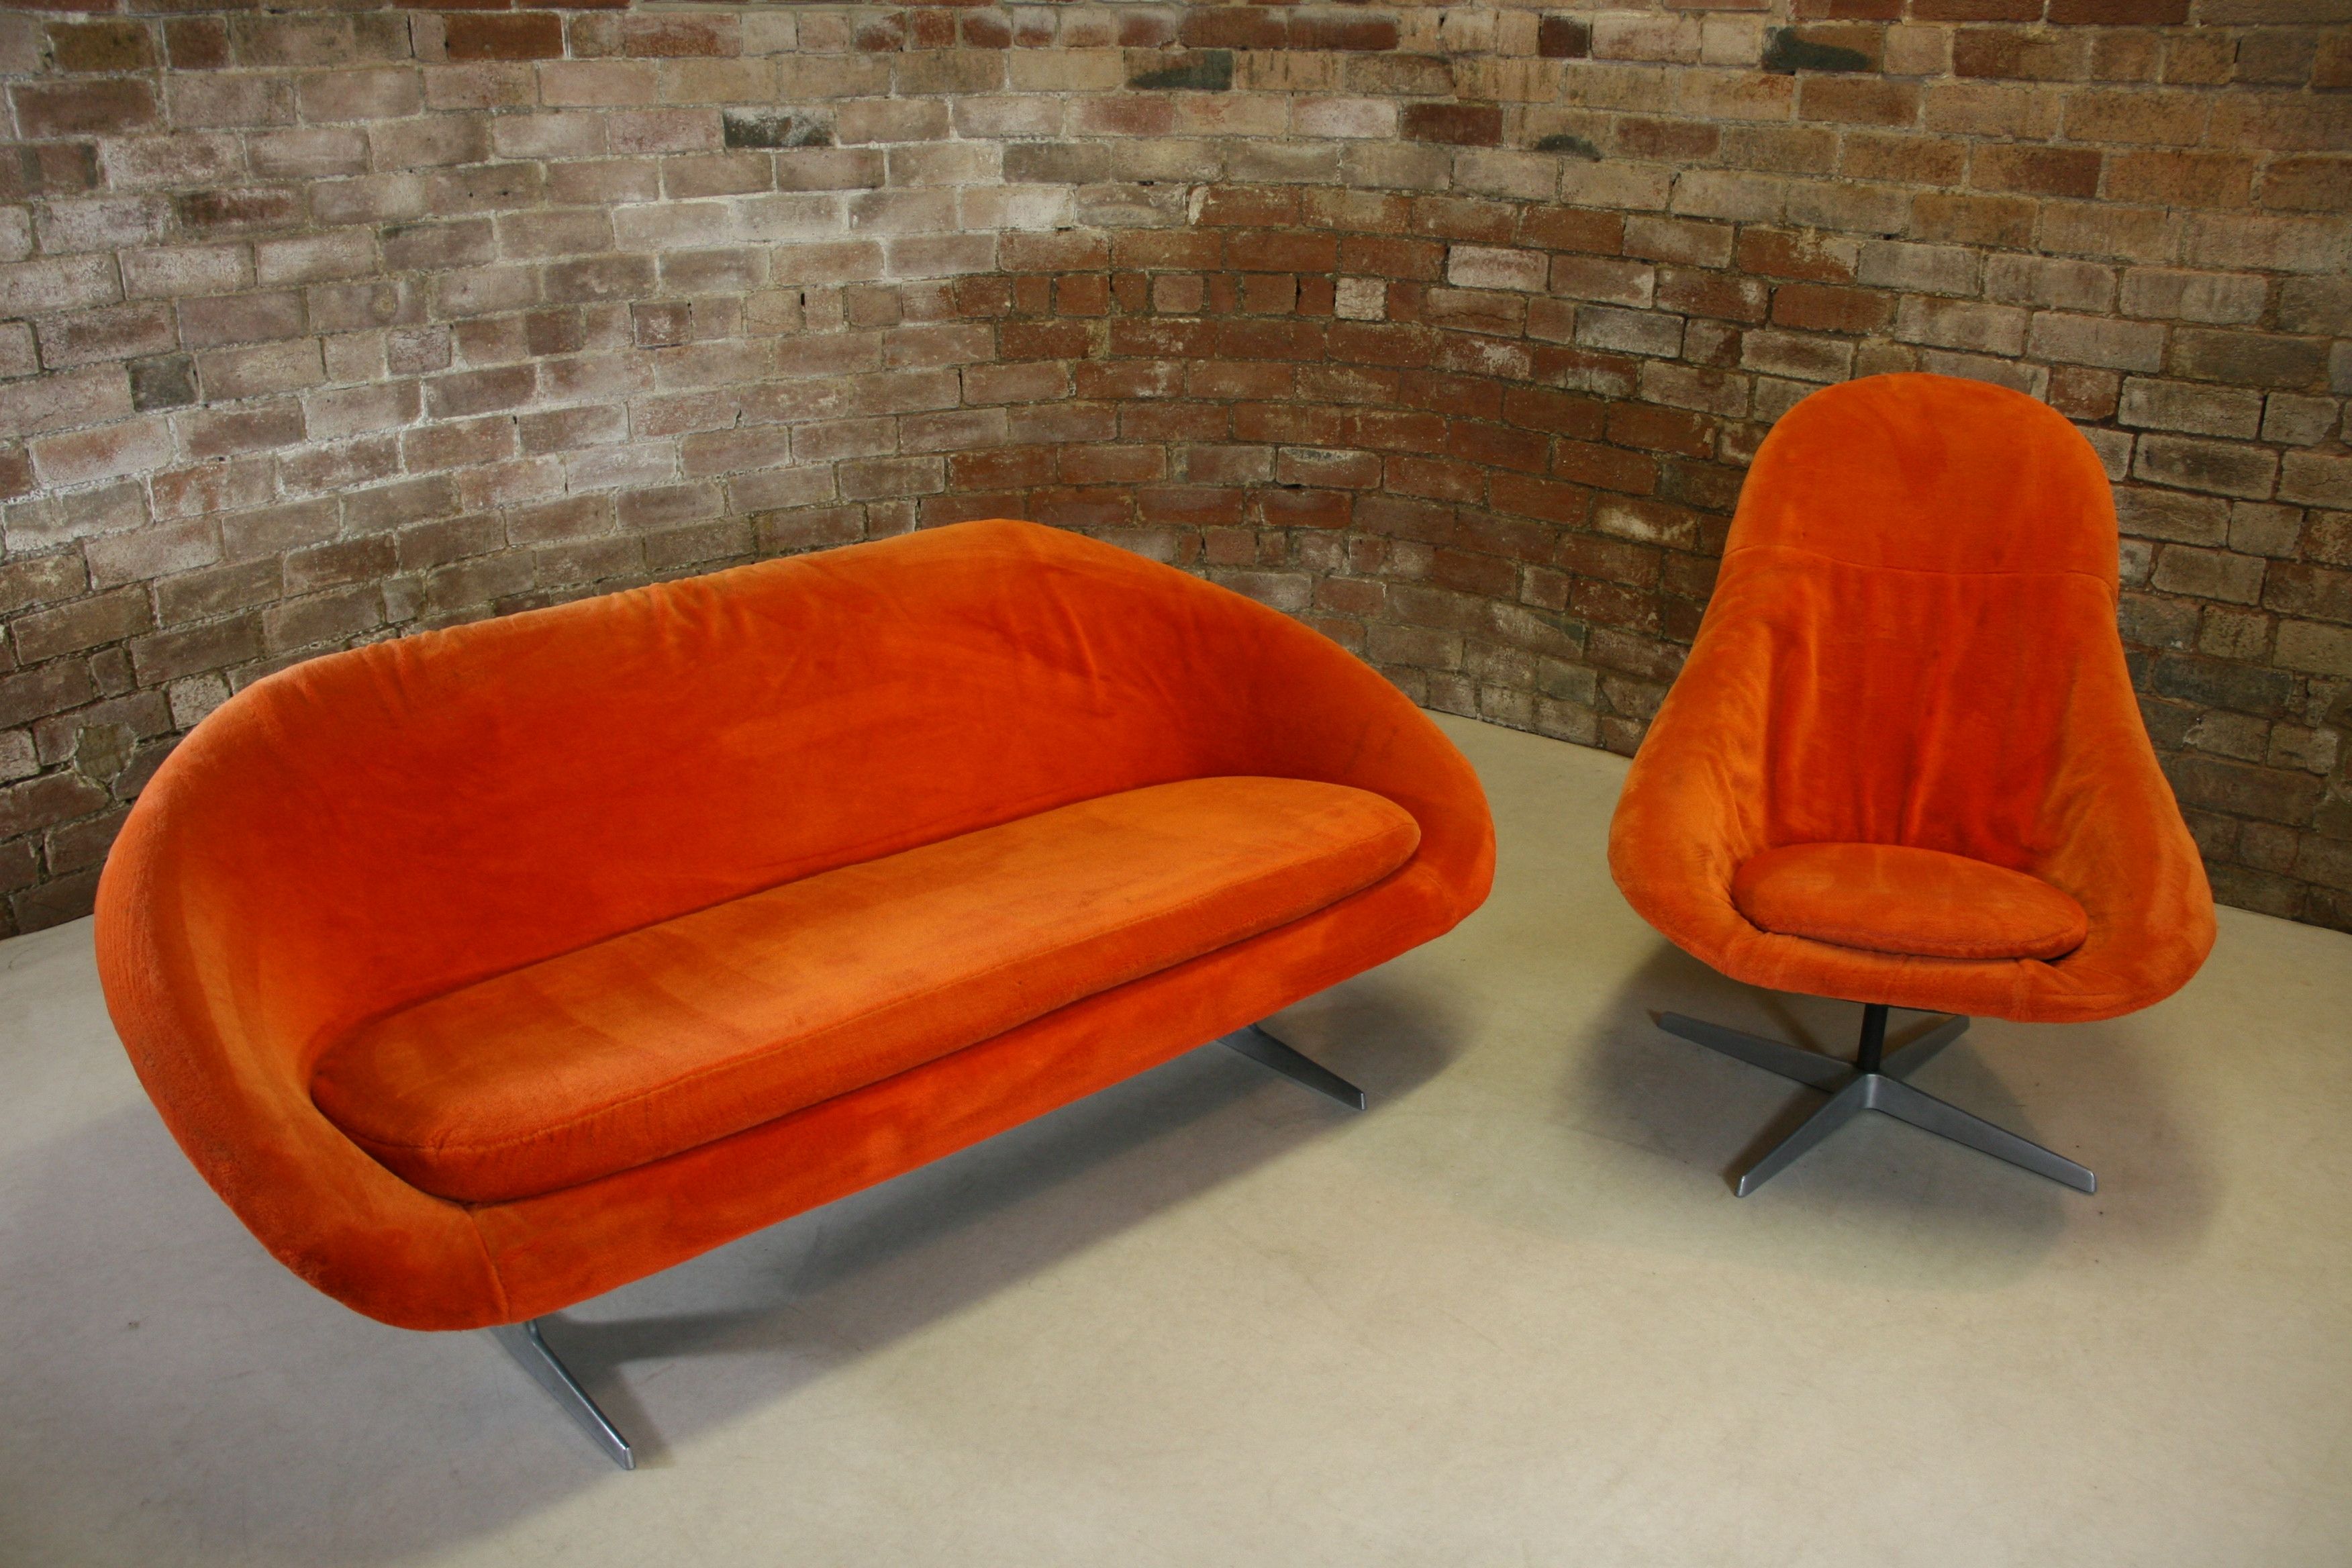 Orange Retro Sofa Hereo Sofa Throughout Retro Sofas And Chairs (View 12 of 15)